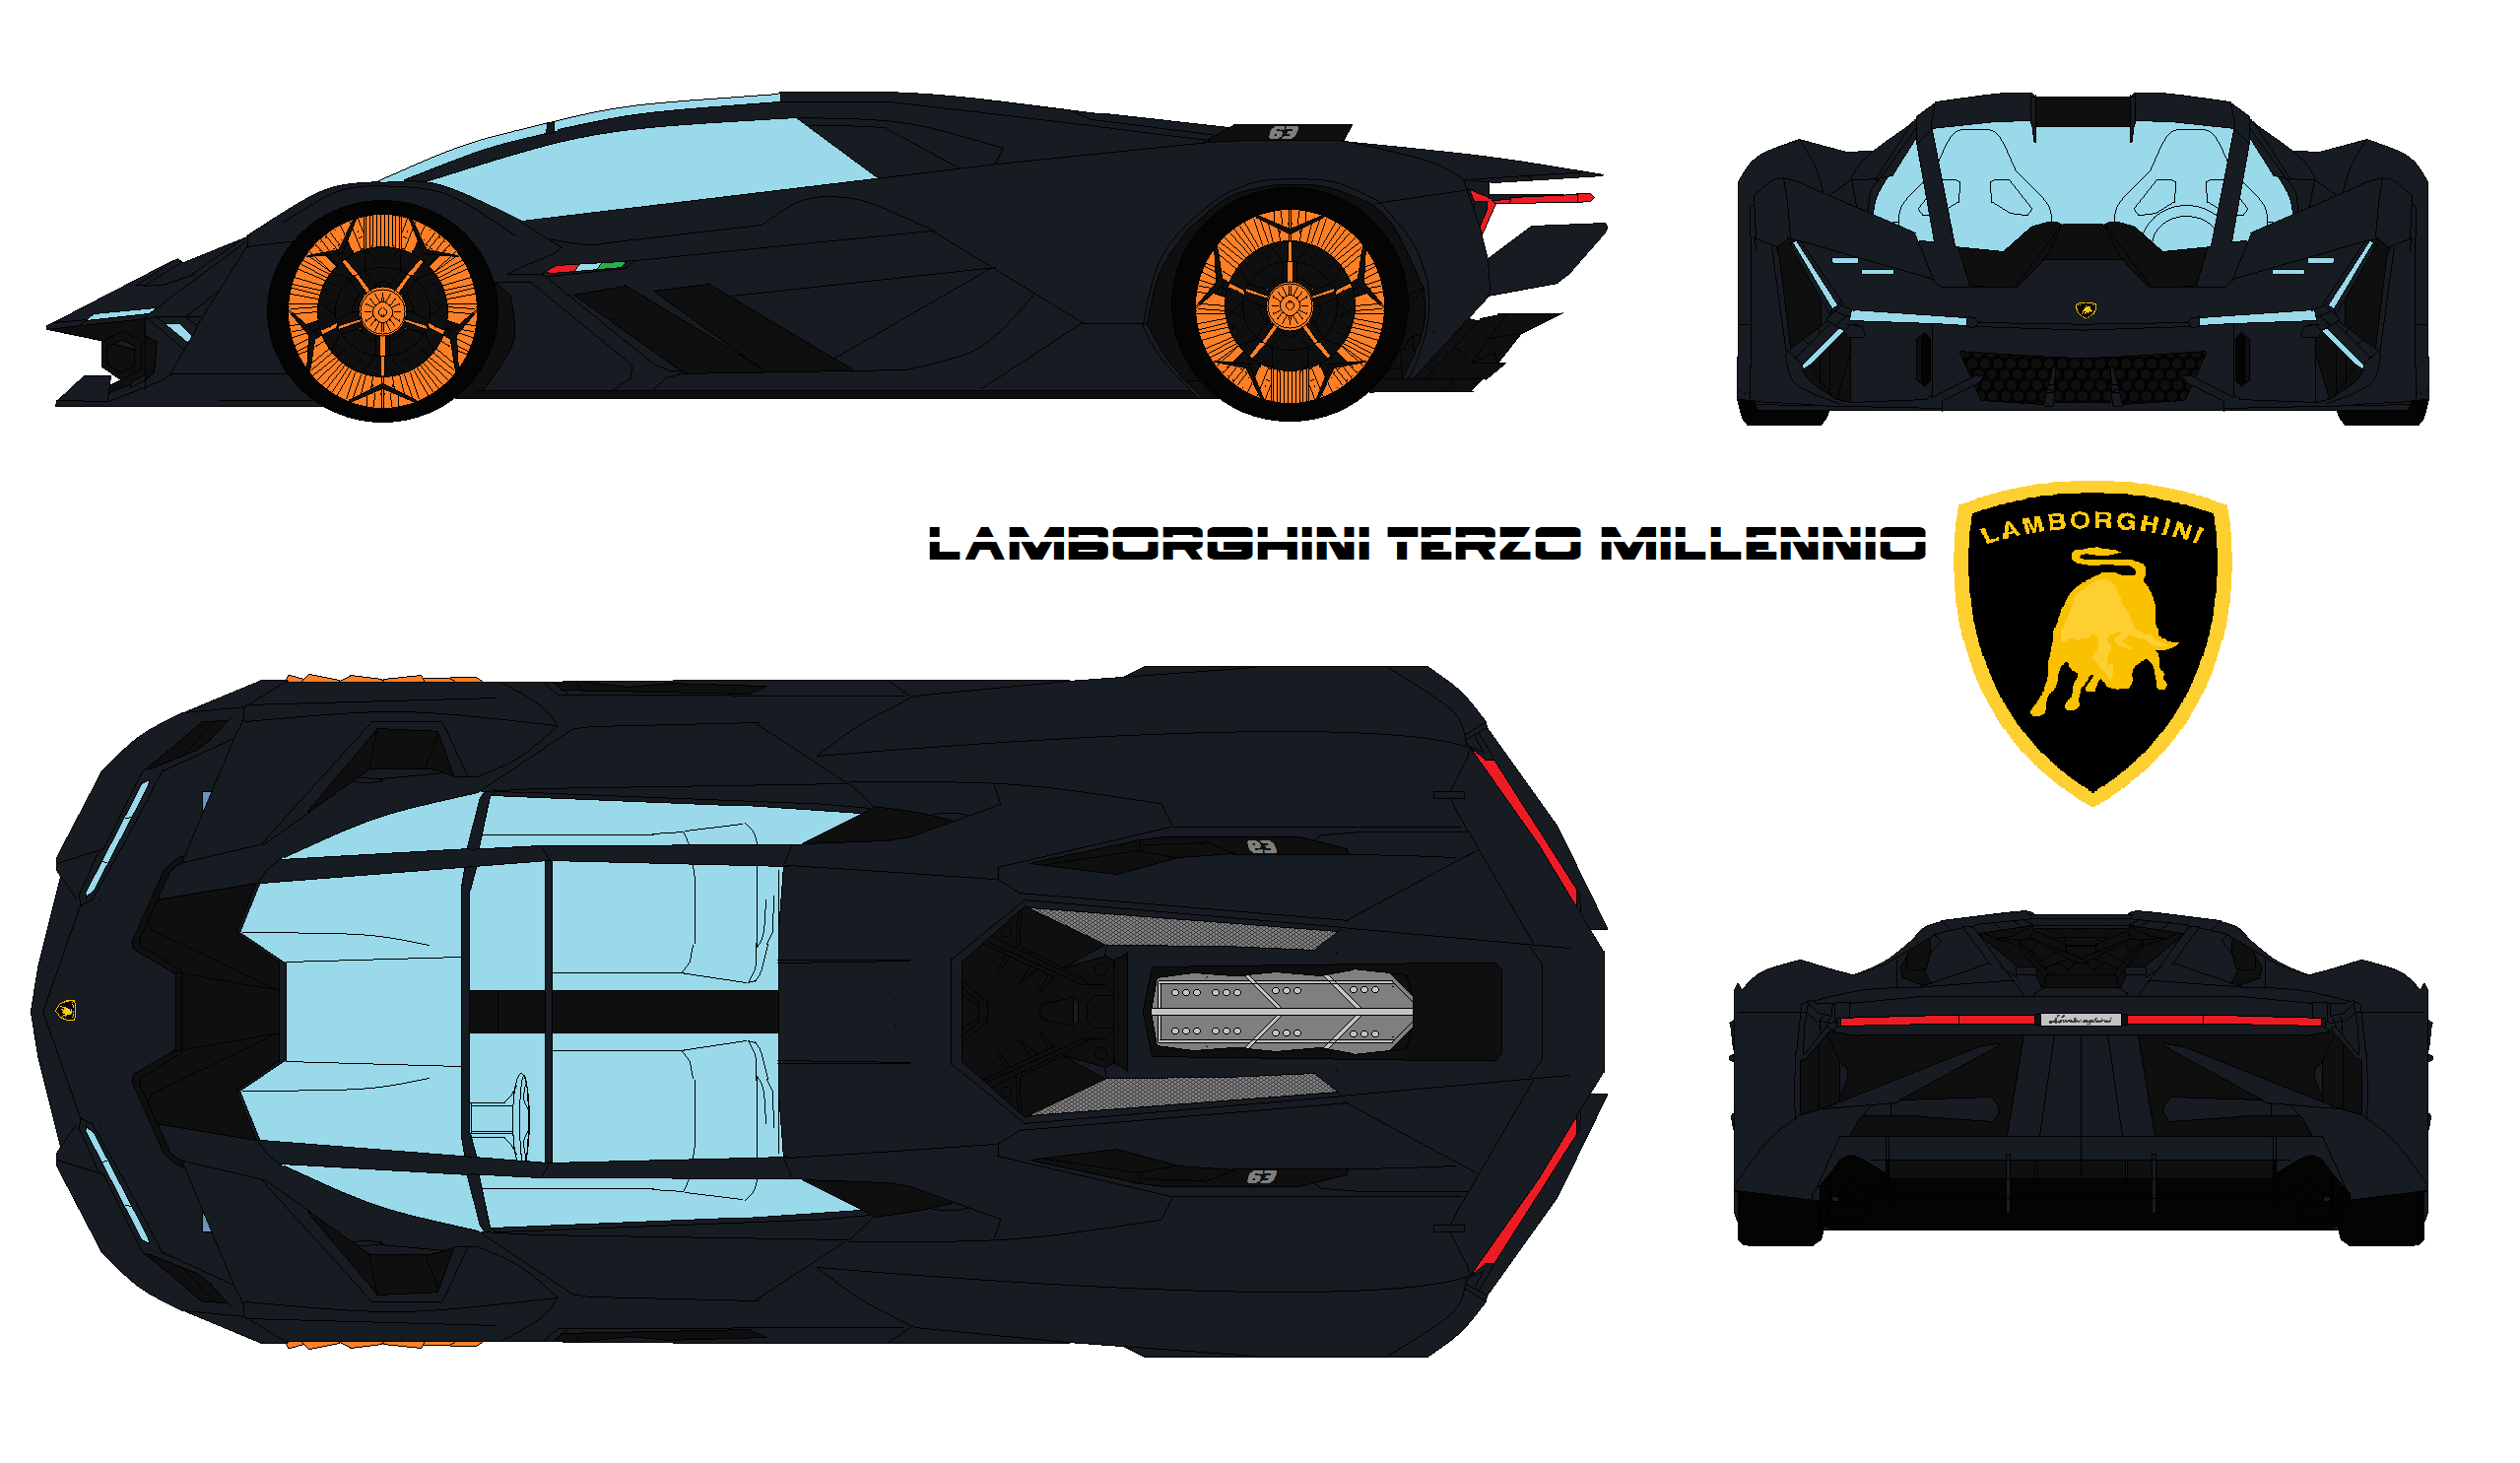 Lamborghini Terzo Millennio Concept Lamborghini's New Fully